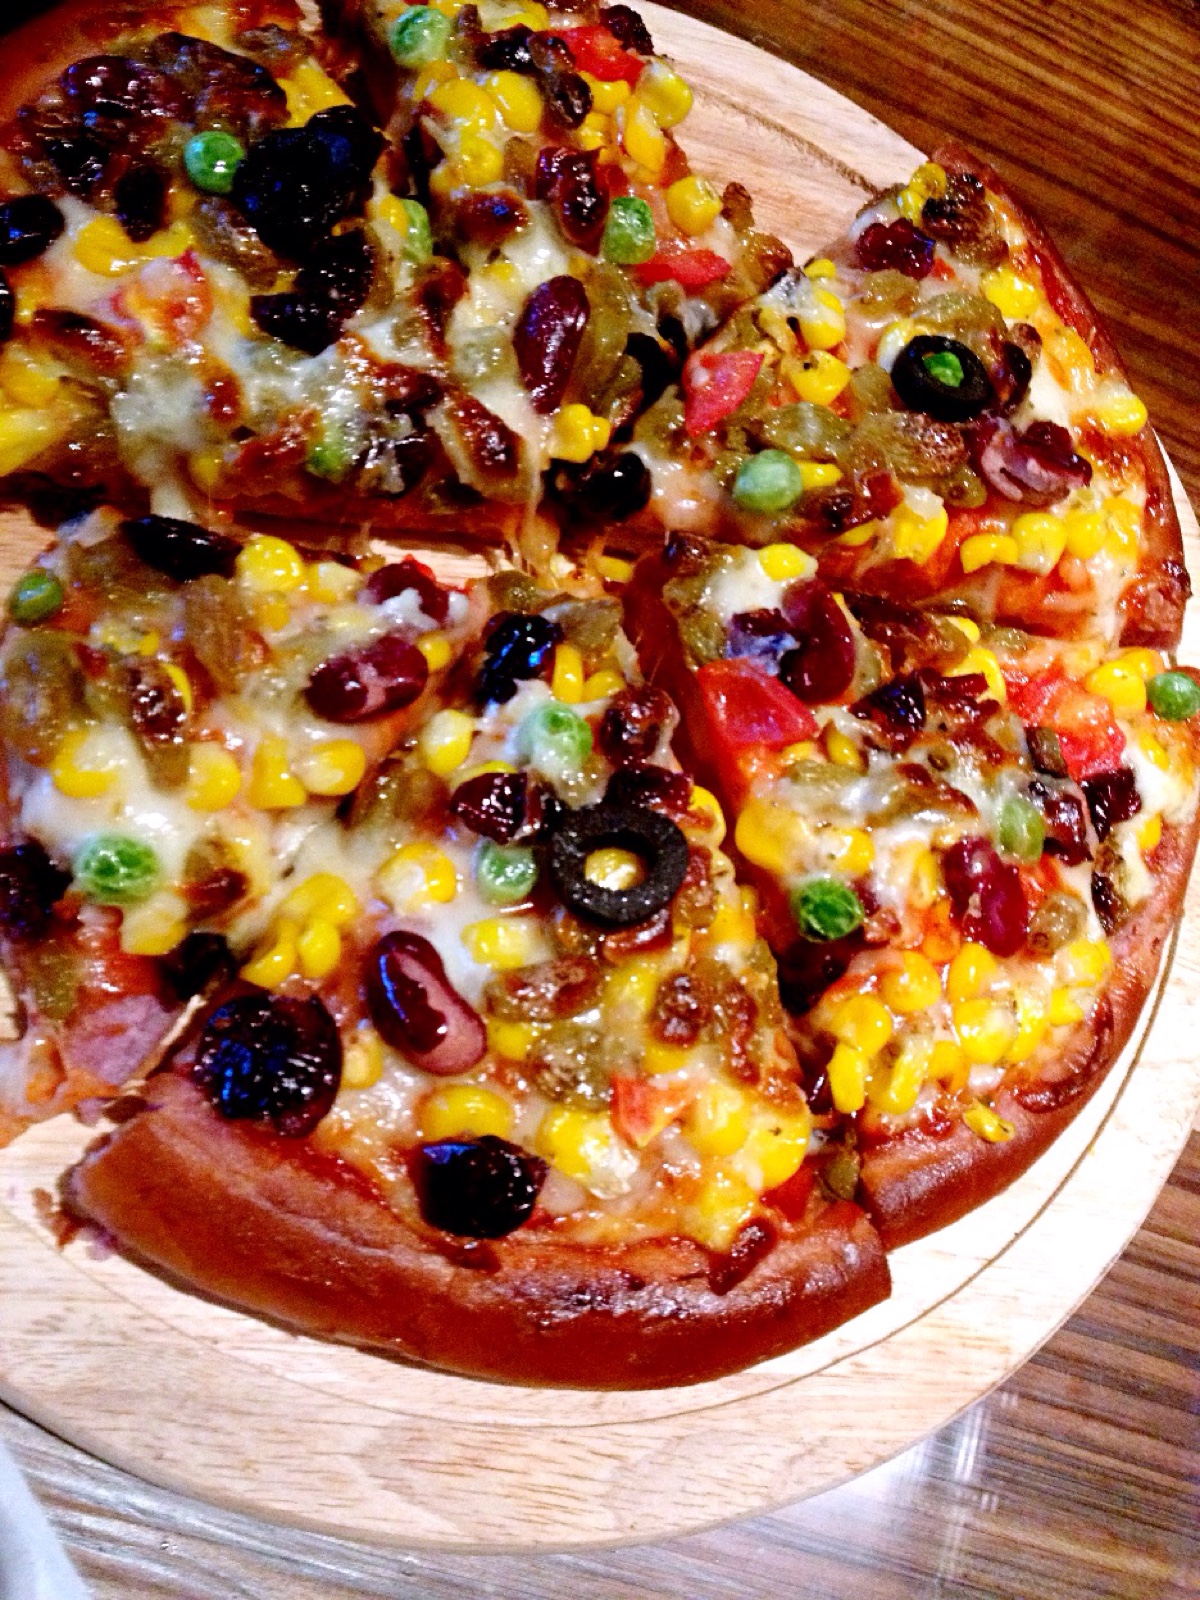 可口的披萨超大的紫薯图片